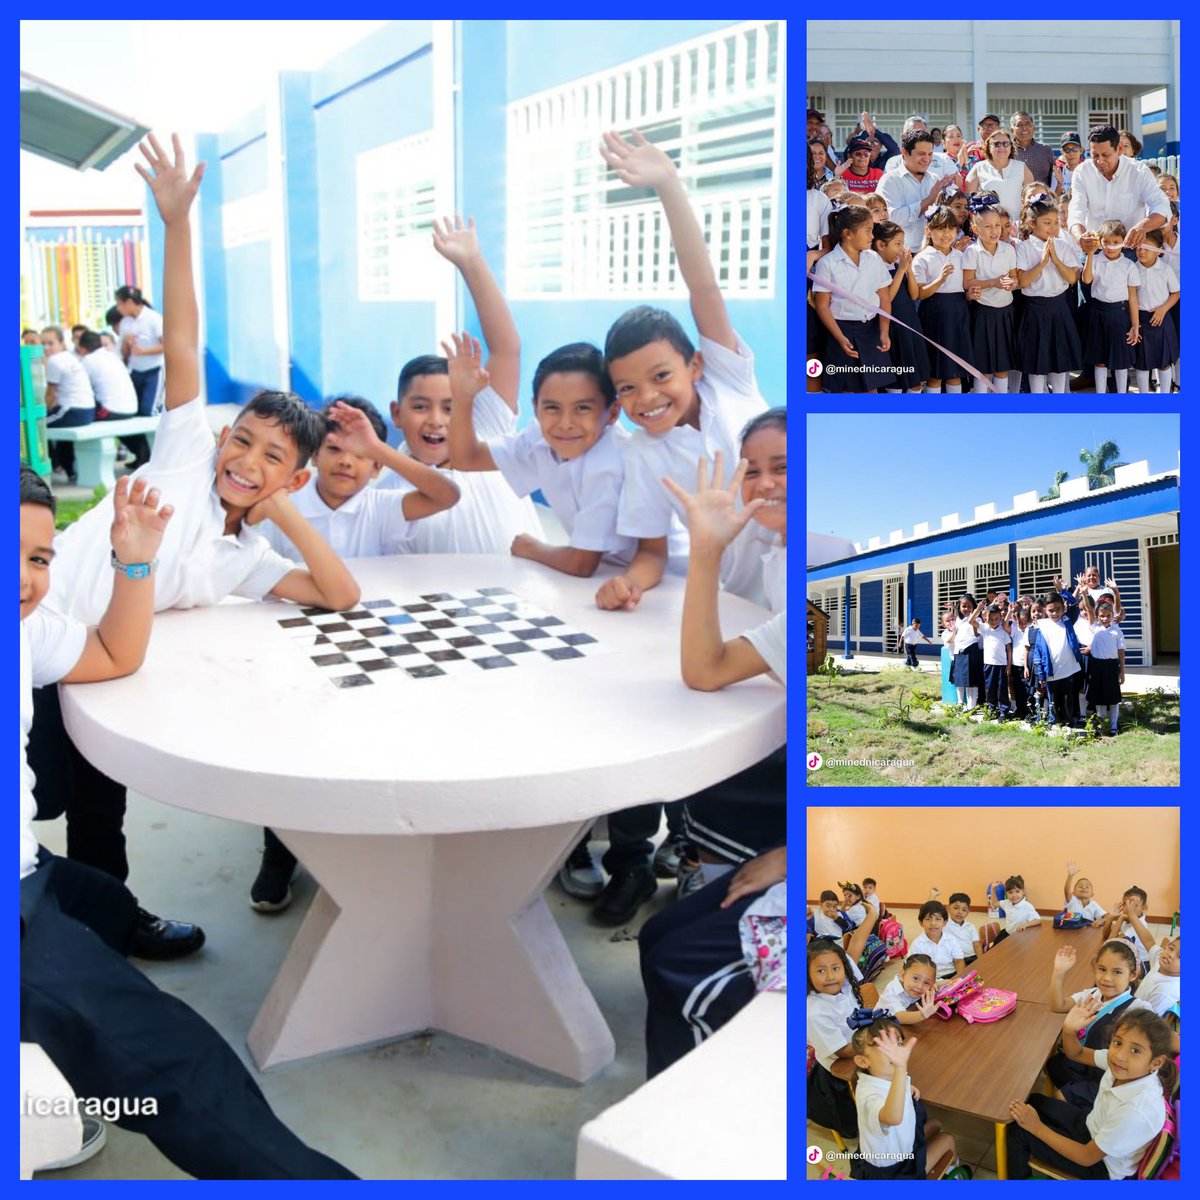 💥Inauguración del Centro Escolar Barrilete de Colores, Distrito I, Managua. 💥La alegria de Vivir en Paz, se ve en la cara de estos nin@s que ahora tienen un espacio digno para recibir sus clases @FloryCantoX @VivaNicaragua79 @indio_nica #UnidosEnVictorias